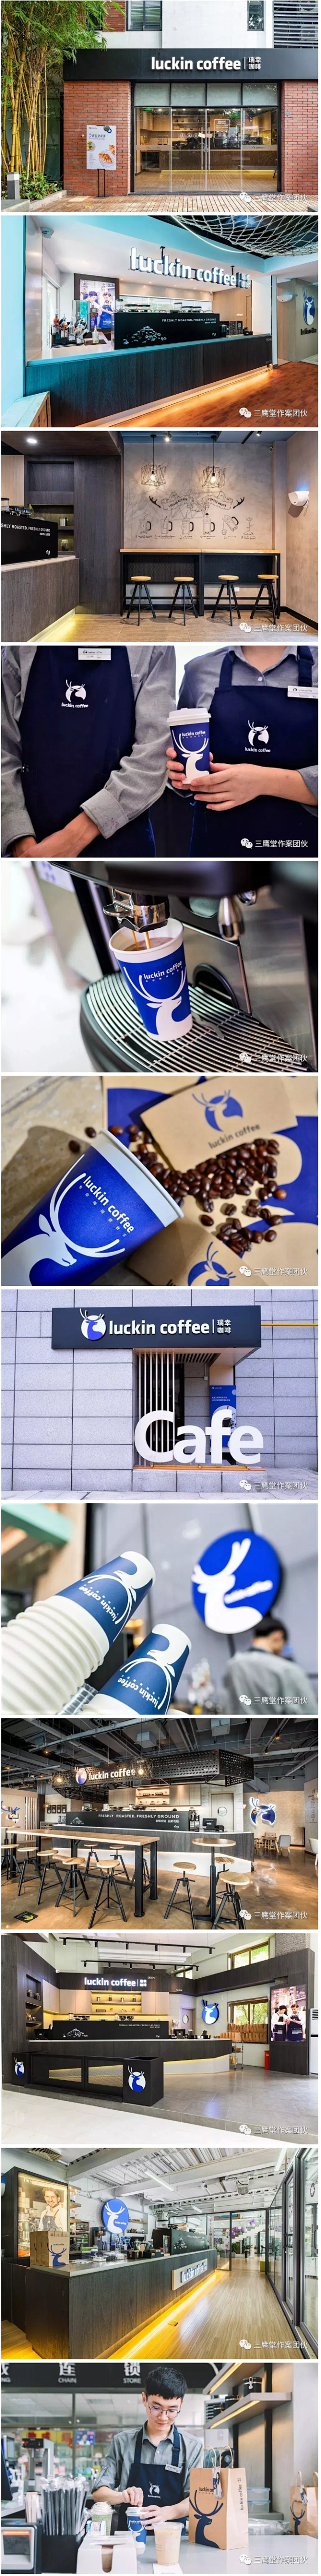 【瑞幸咖啡的门店设计】
瑞幸咖啡会是下一...